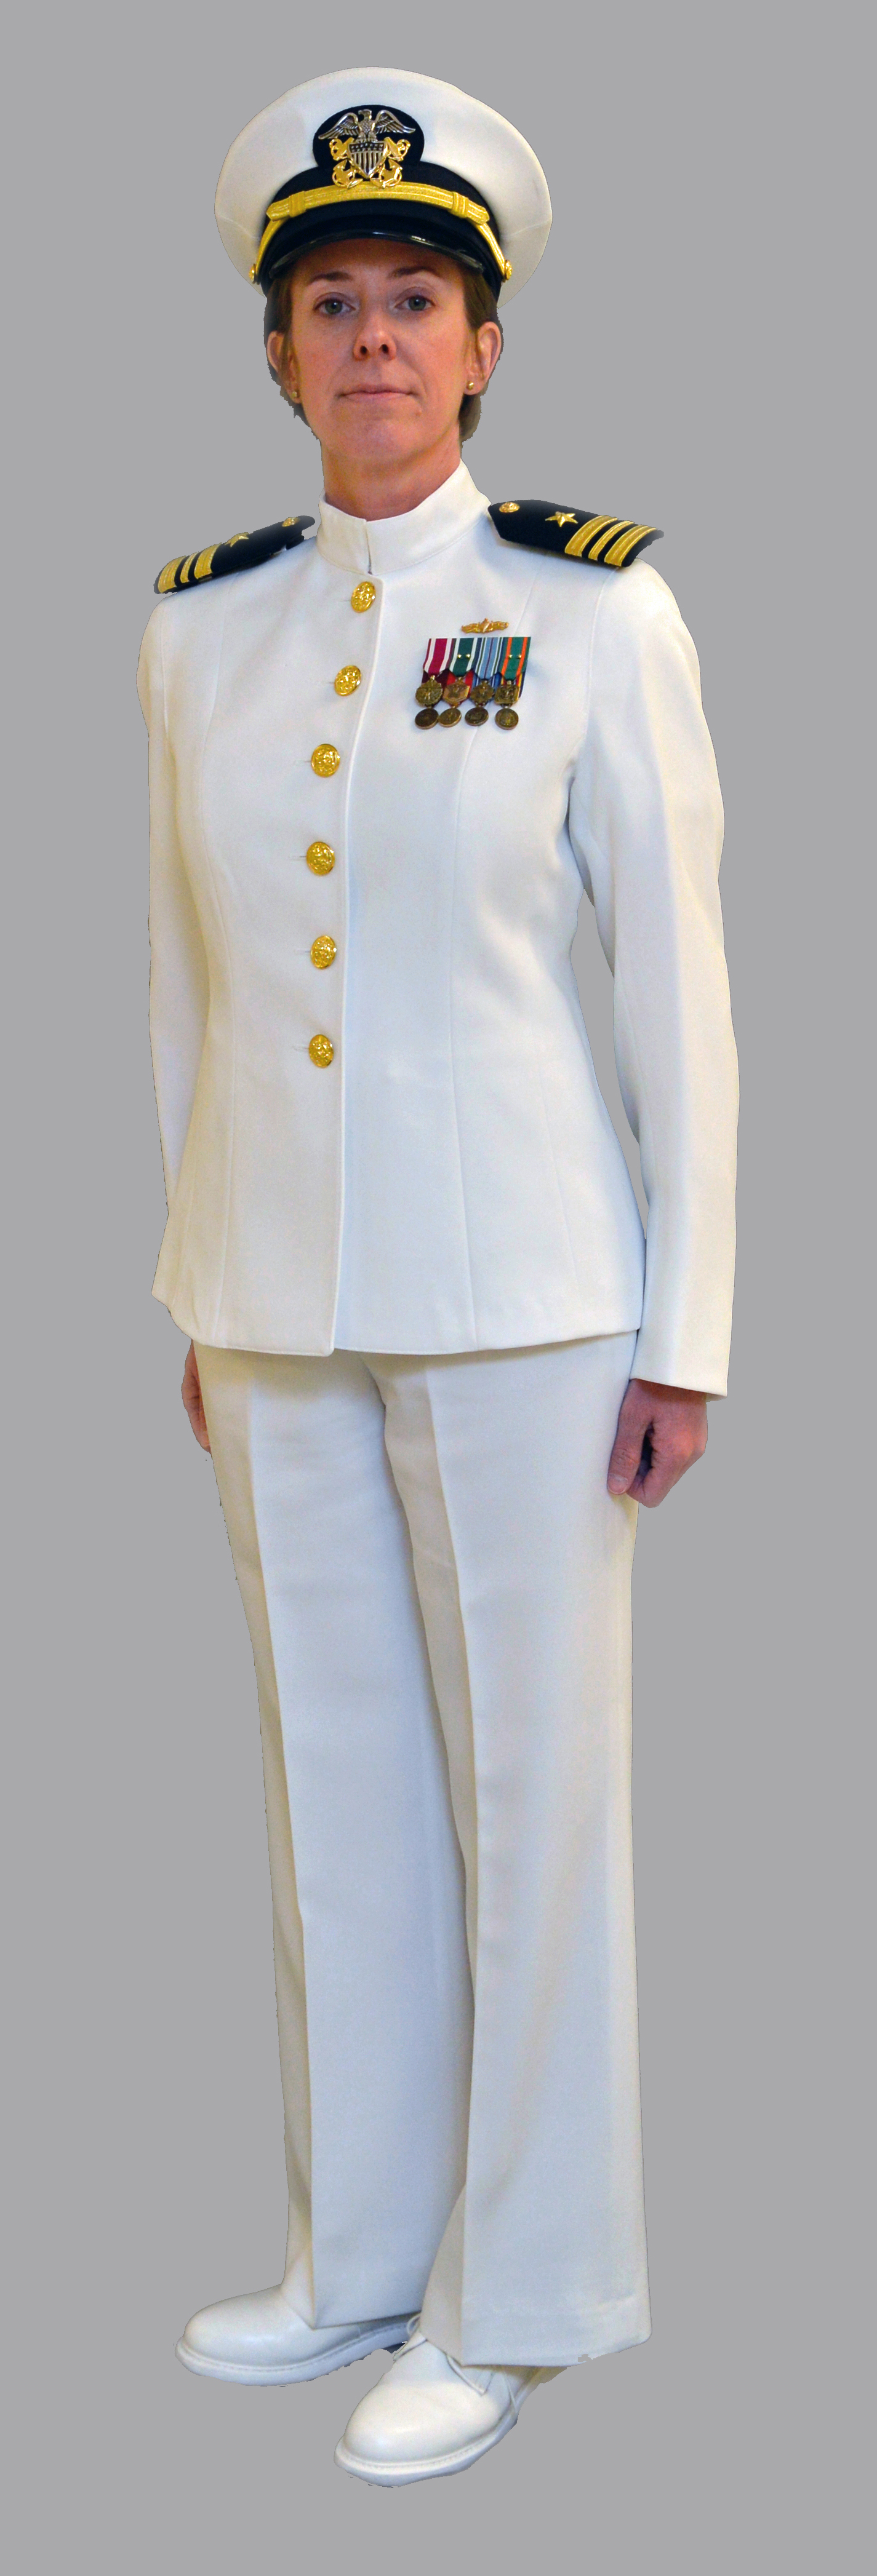 White Female Dress Mini Medals